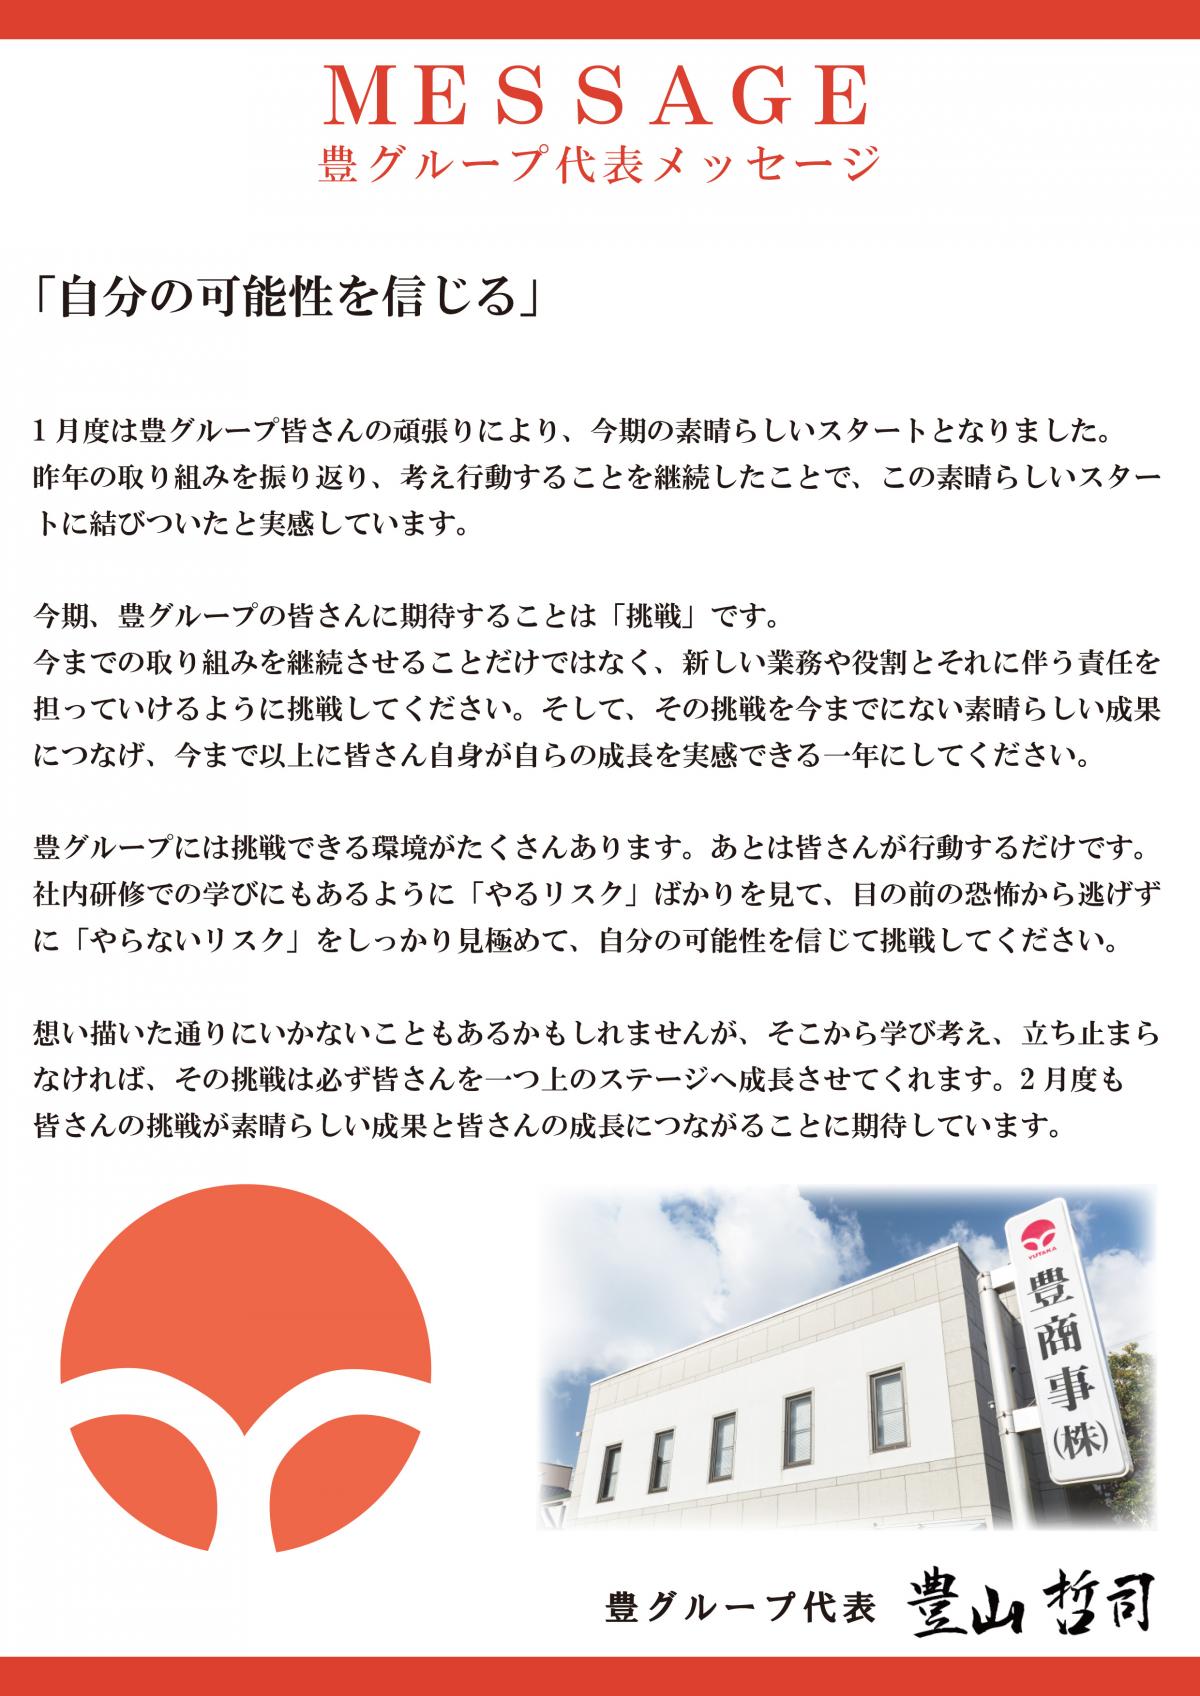 『YUTAKA BLOG』2月の豊グループ代表メッセージ 更新